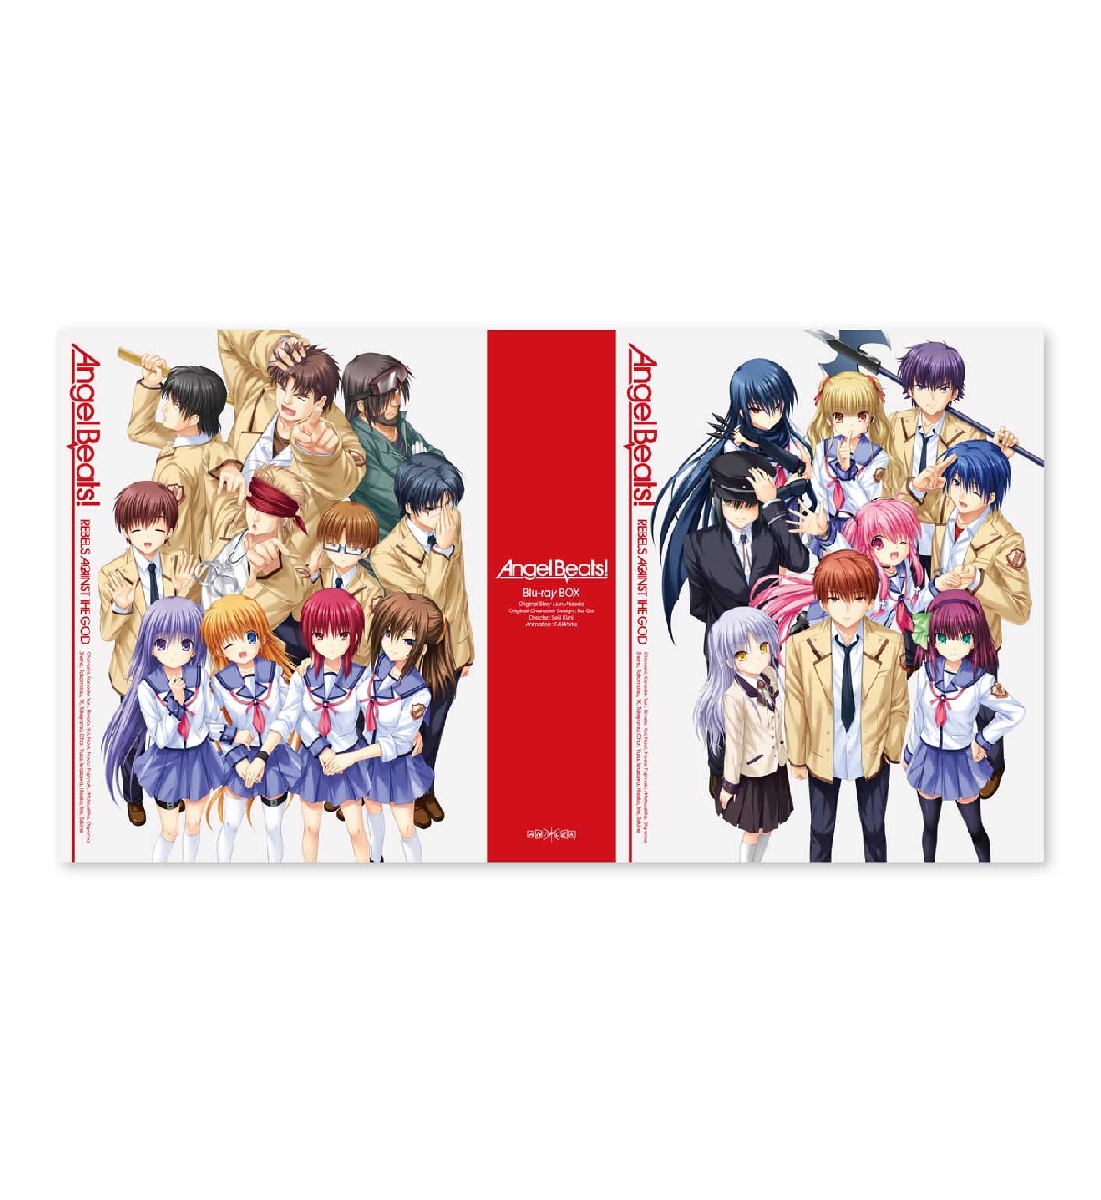 楽天ブックス: Angel Beats! Blu-ray BOX 【完全生産限定版】【Blu-ray